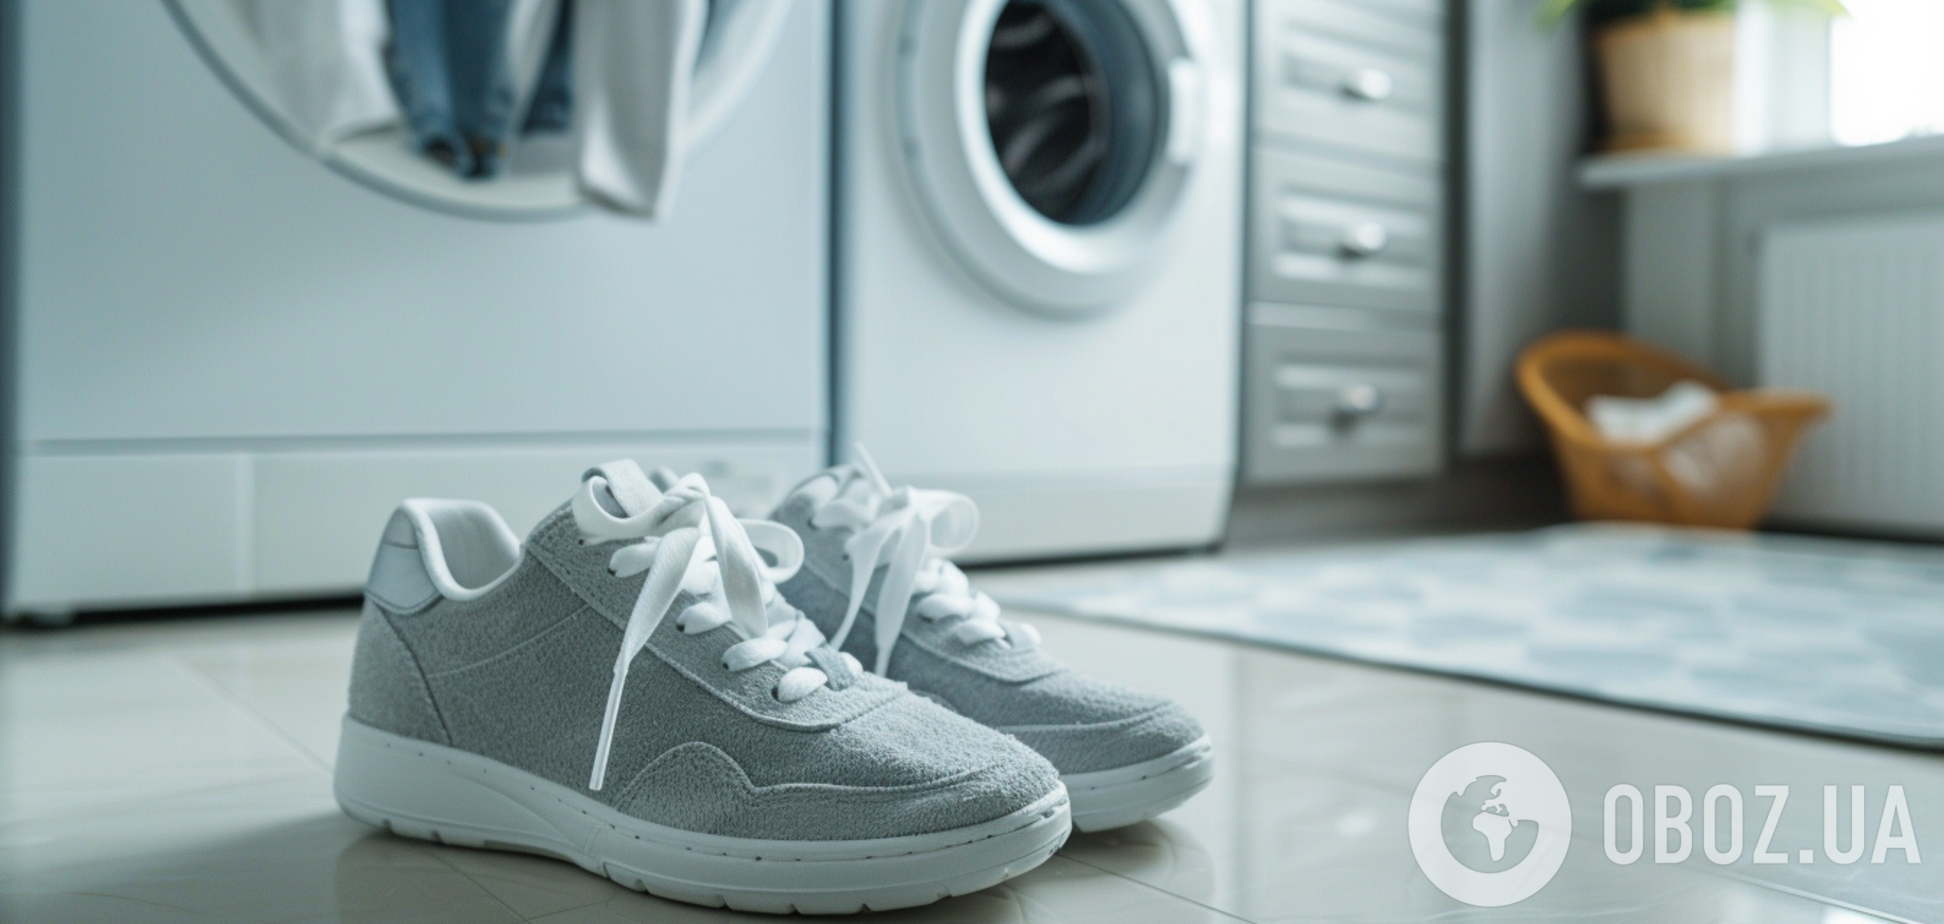 Як правильно прати взуття у машинці: є важливі нюанси